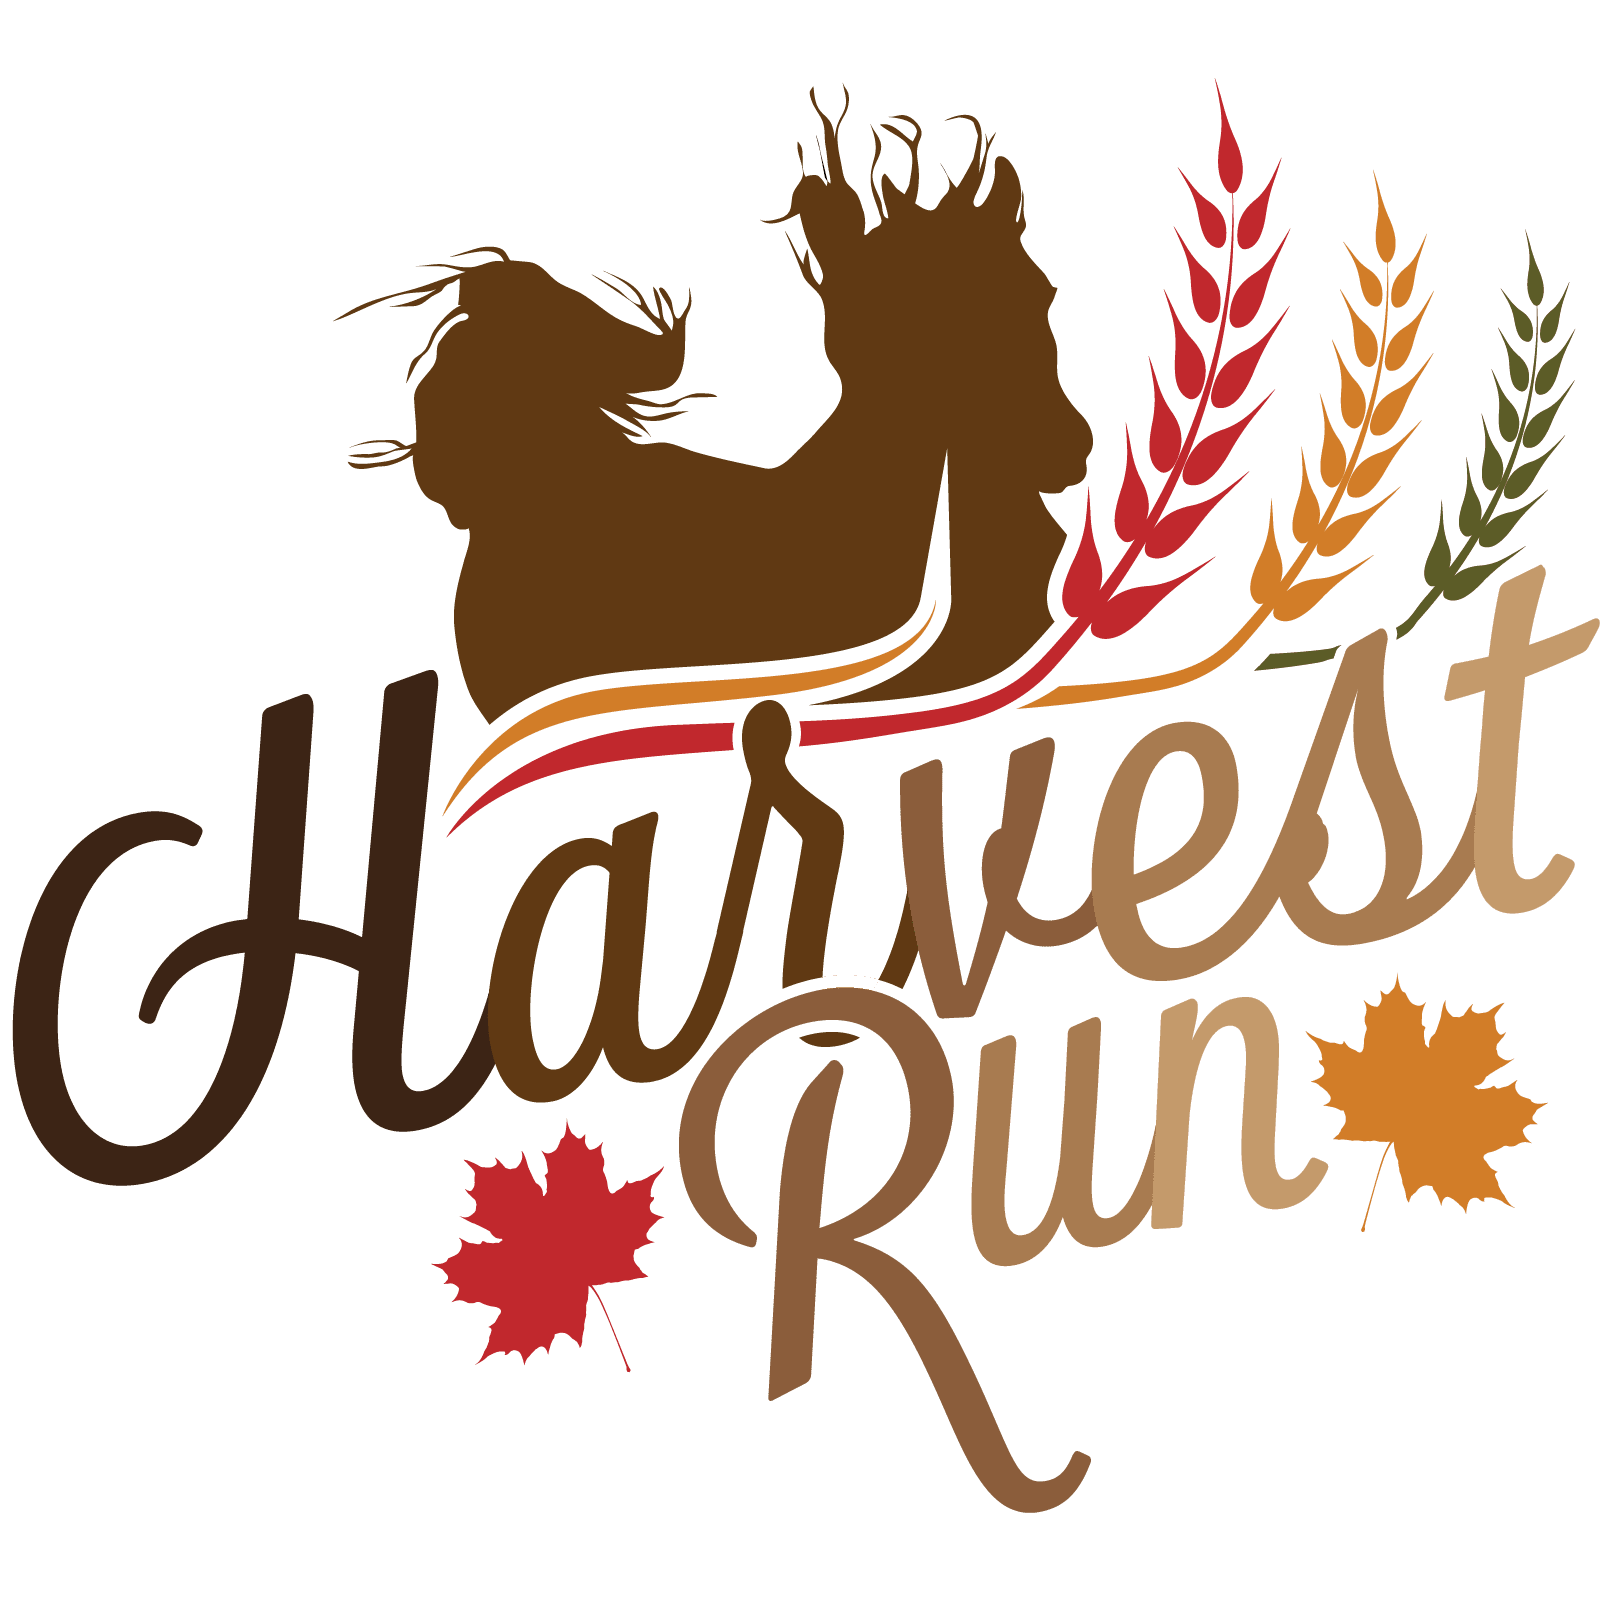 The logo for harvest run.